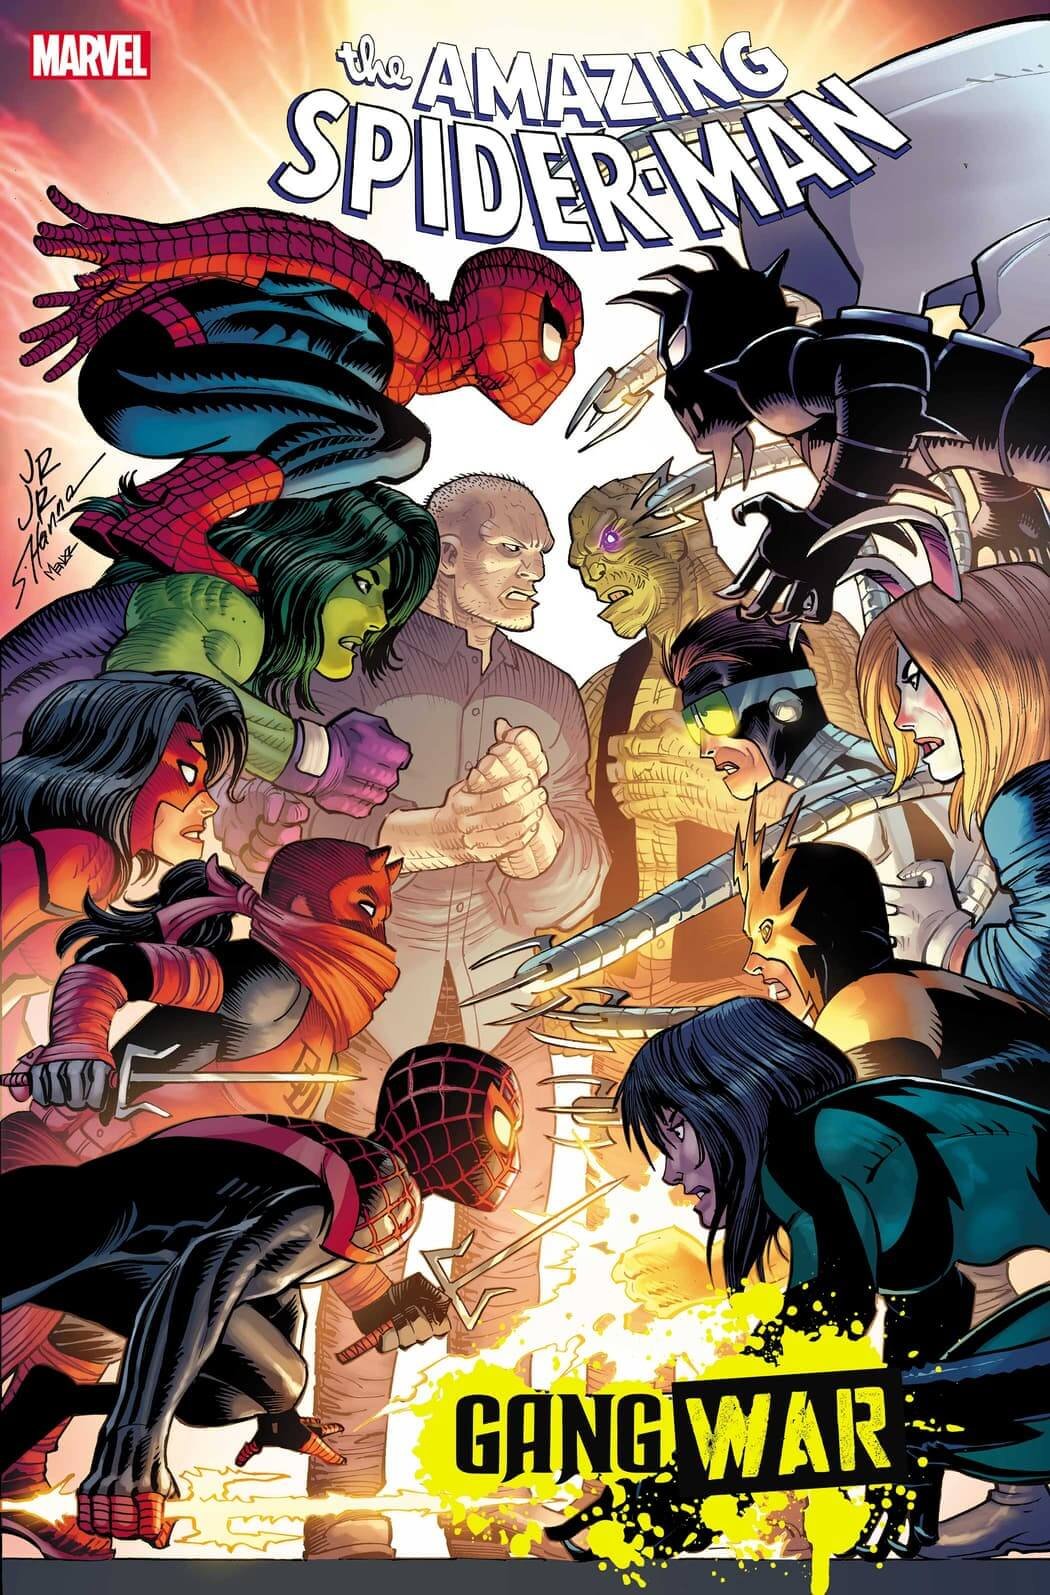 Amazing Spider-Man 43 couvert par John Romita Jr, la fin de Gang War annoncée par la bande-annonce